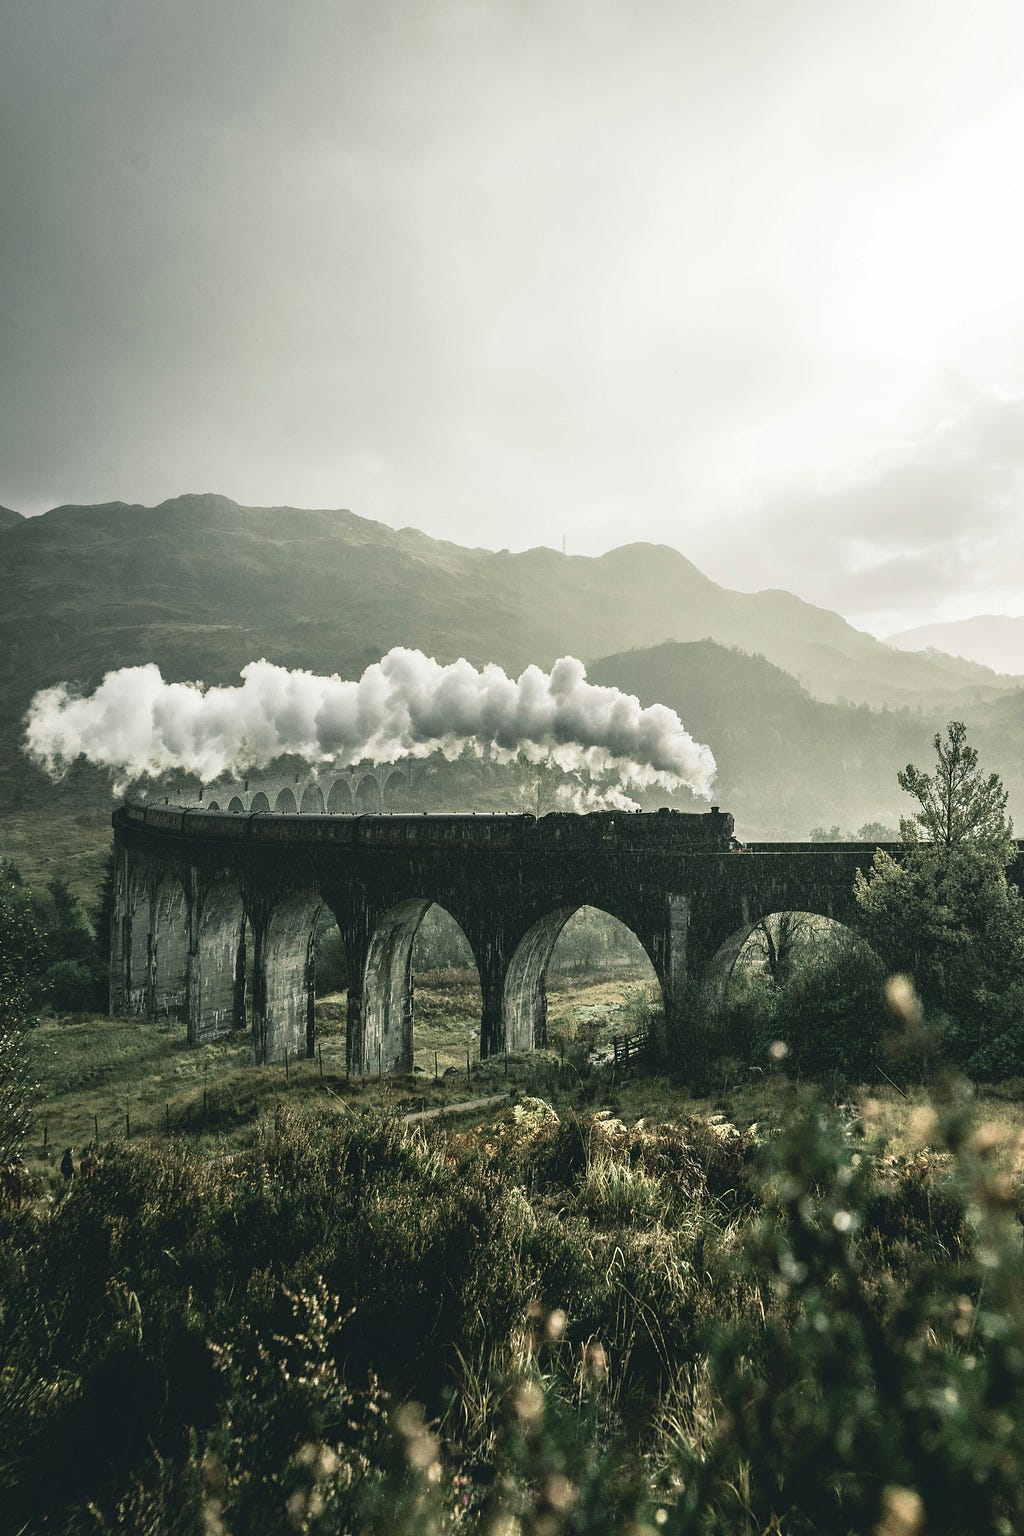 A steam train crossing a bridge